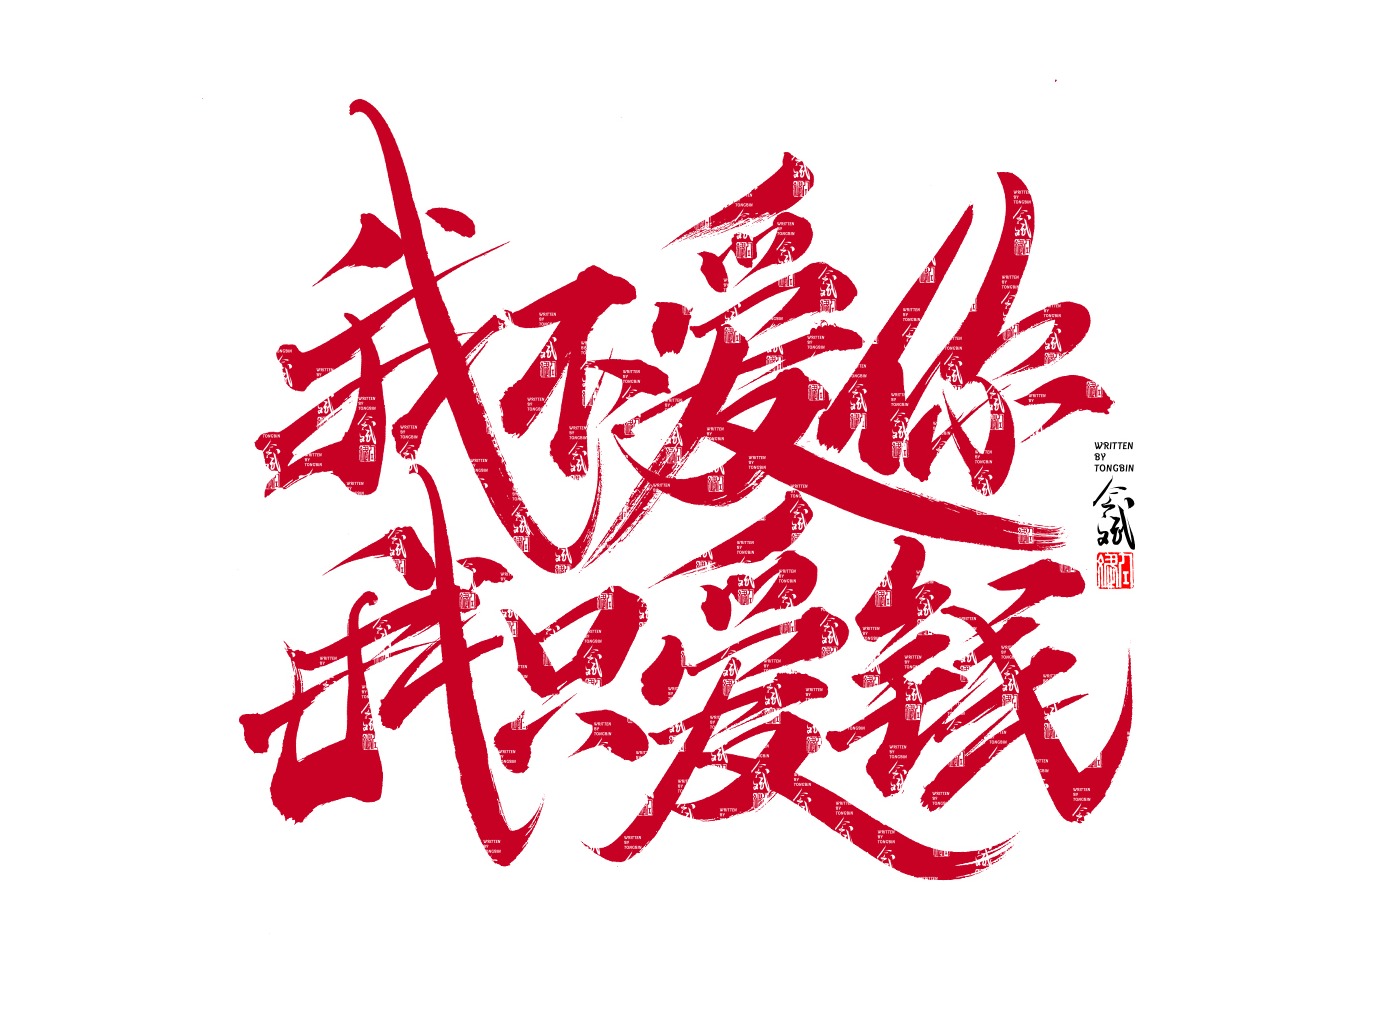 stylish chinese fonts